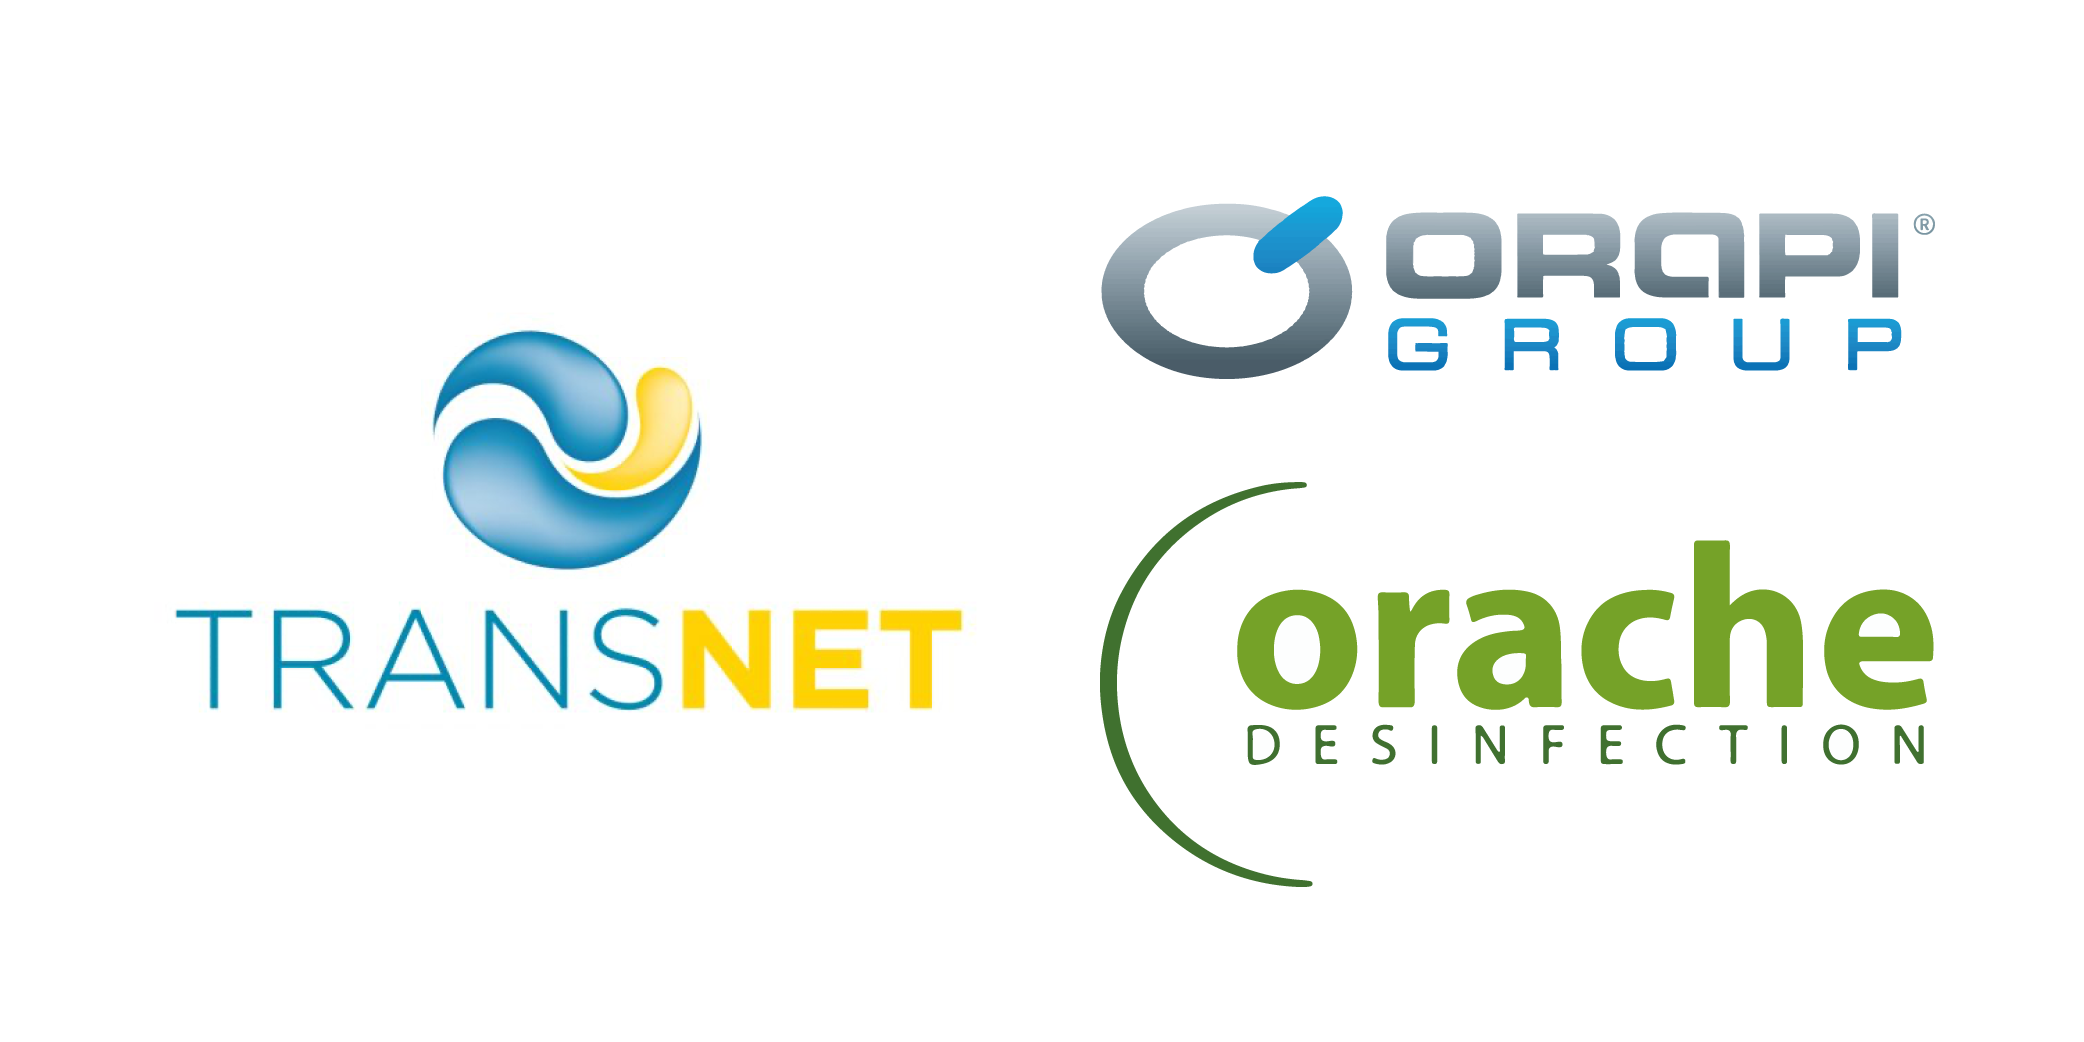 Certificados Orapi Group / Transnet y Orache en Valladolid